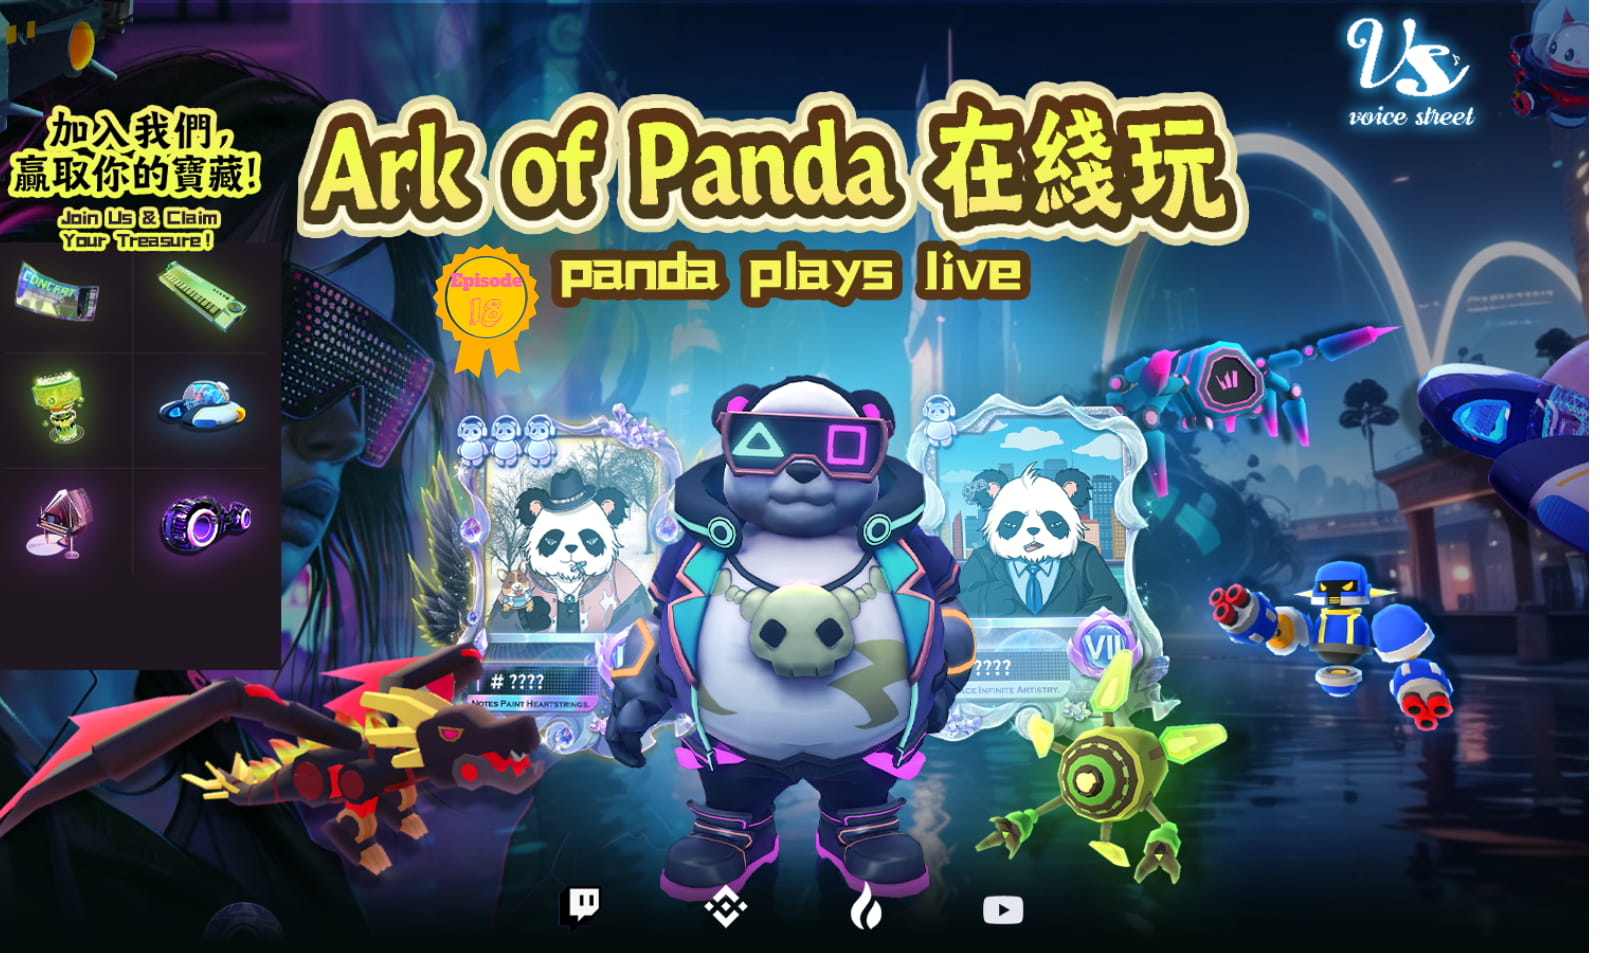 Ark of panda（DPGU） plays live EP18